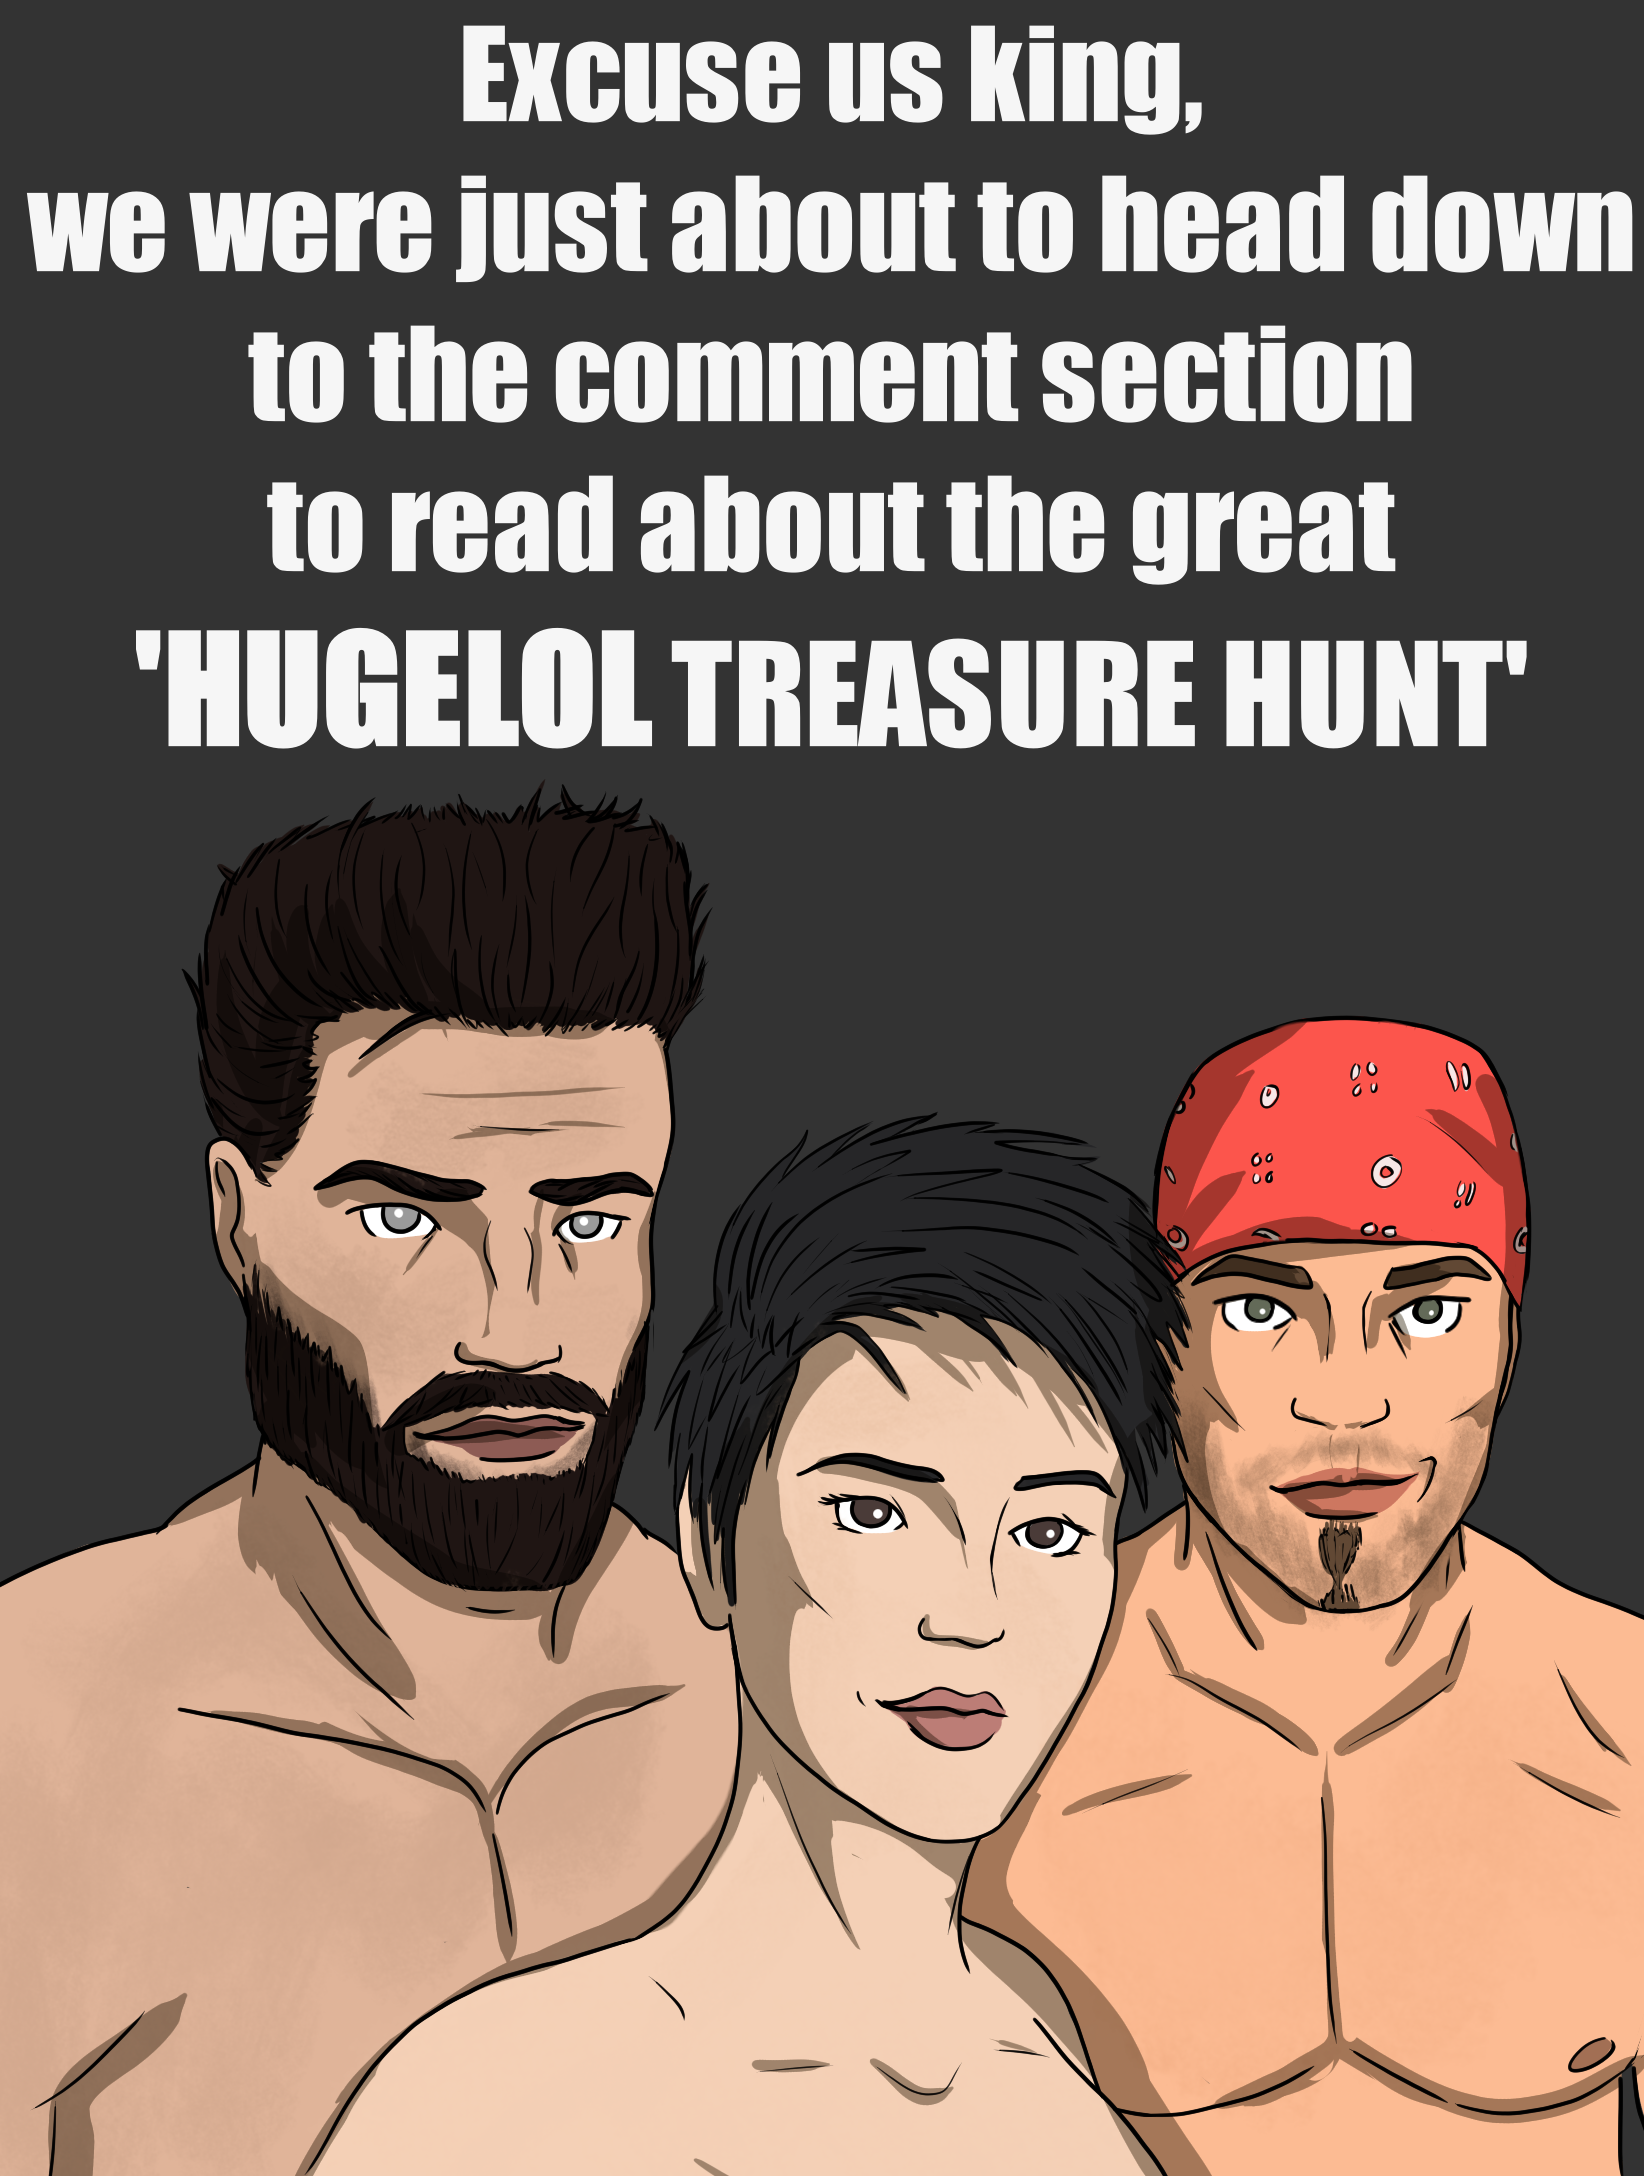 Hugelol Treasure Hunt!